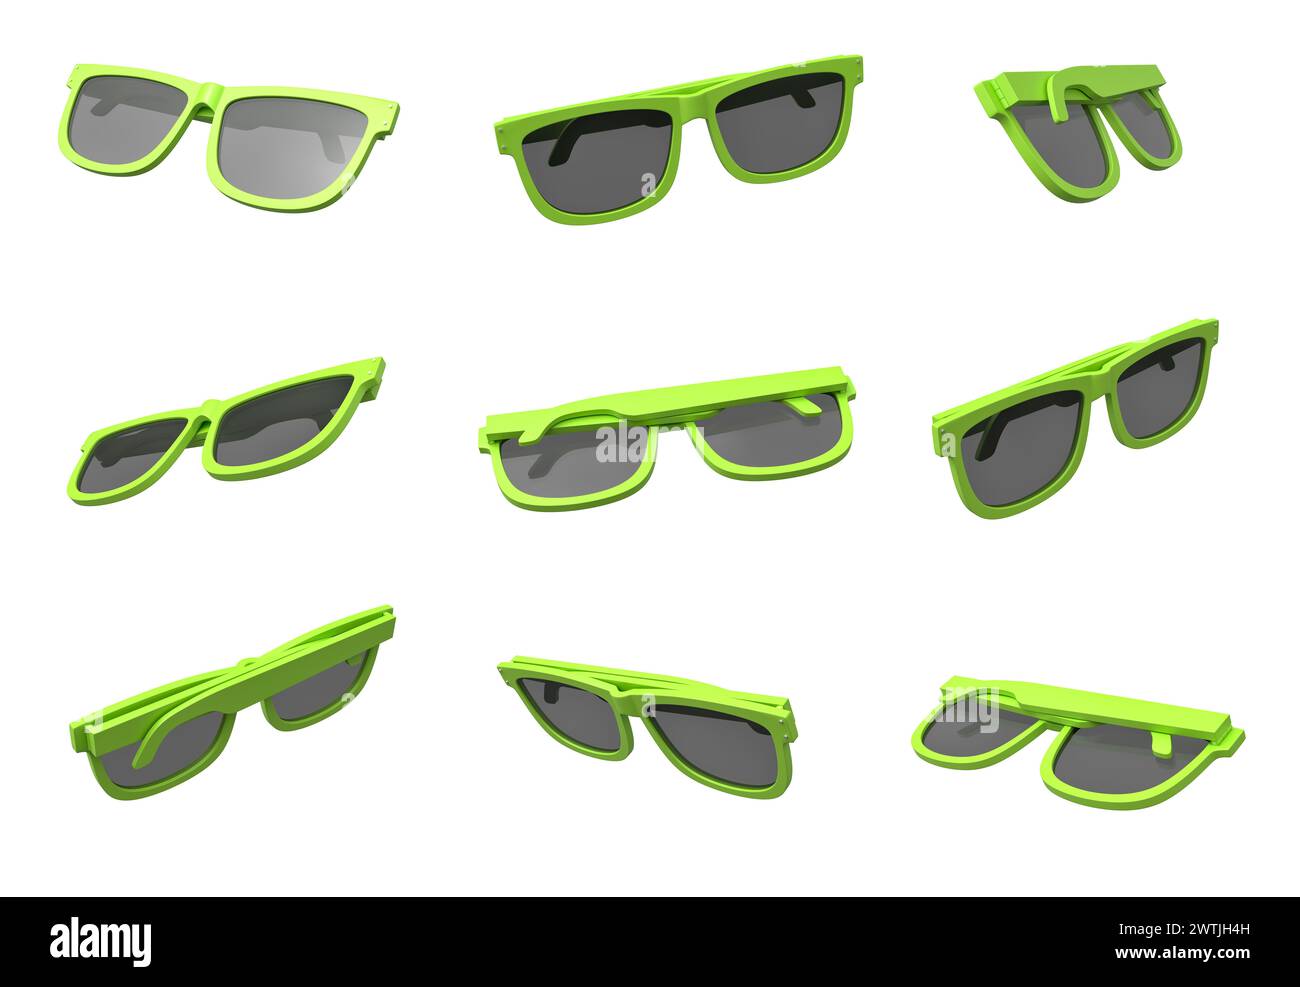 Occhiali da sole verdi in diverse disposizioni Foto Stock